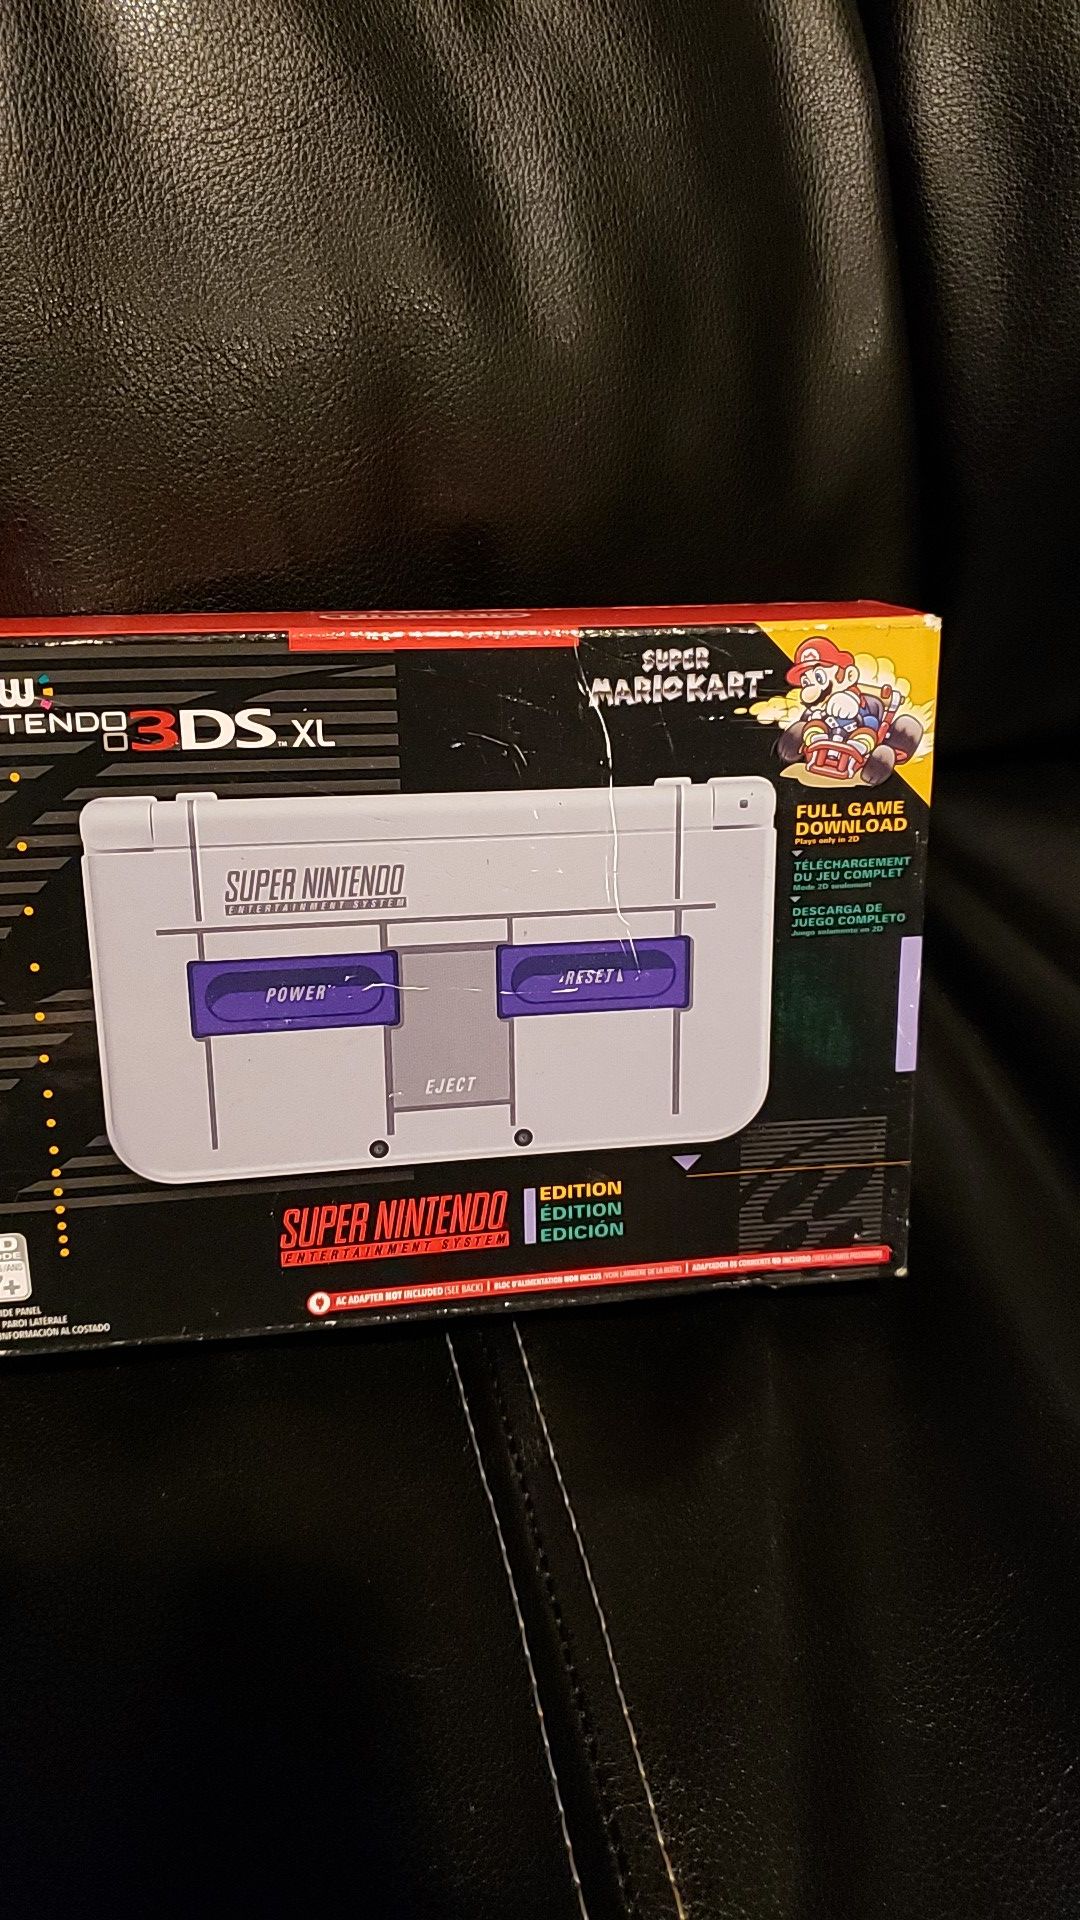 Nintendo 3DSXL Super Nintendo edition